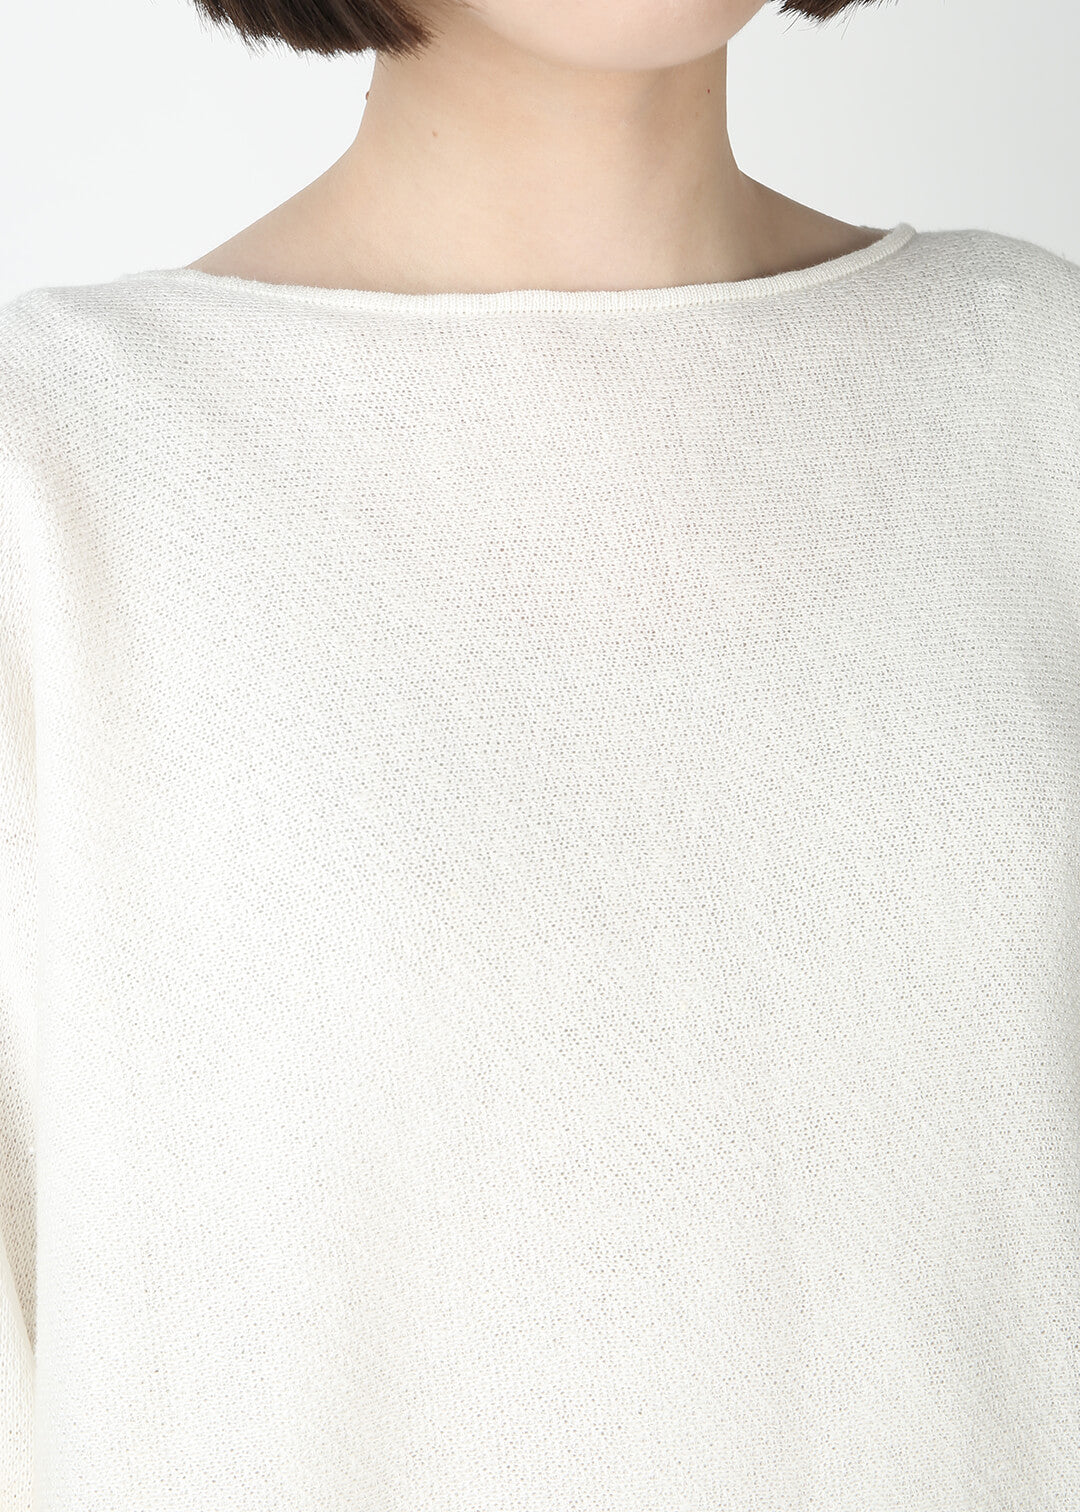 Kirie Jacquard Sweater 12gg Linen